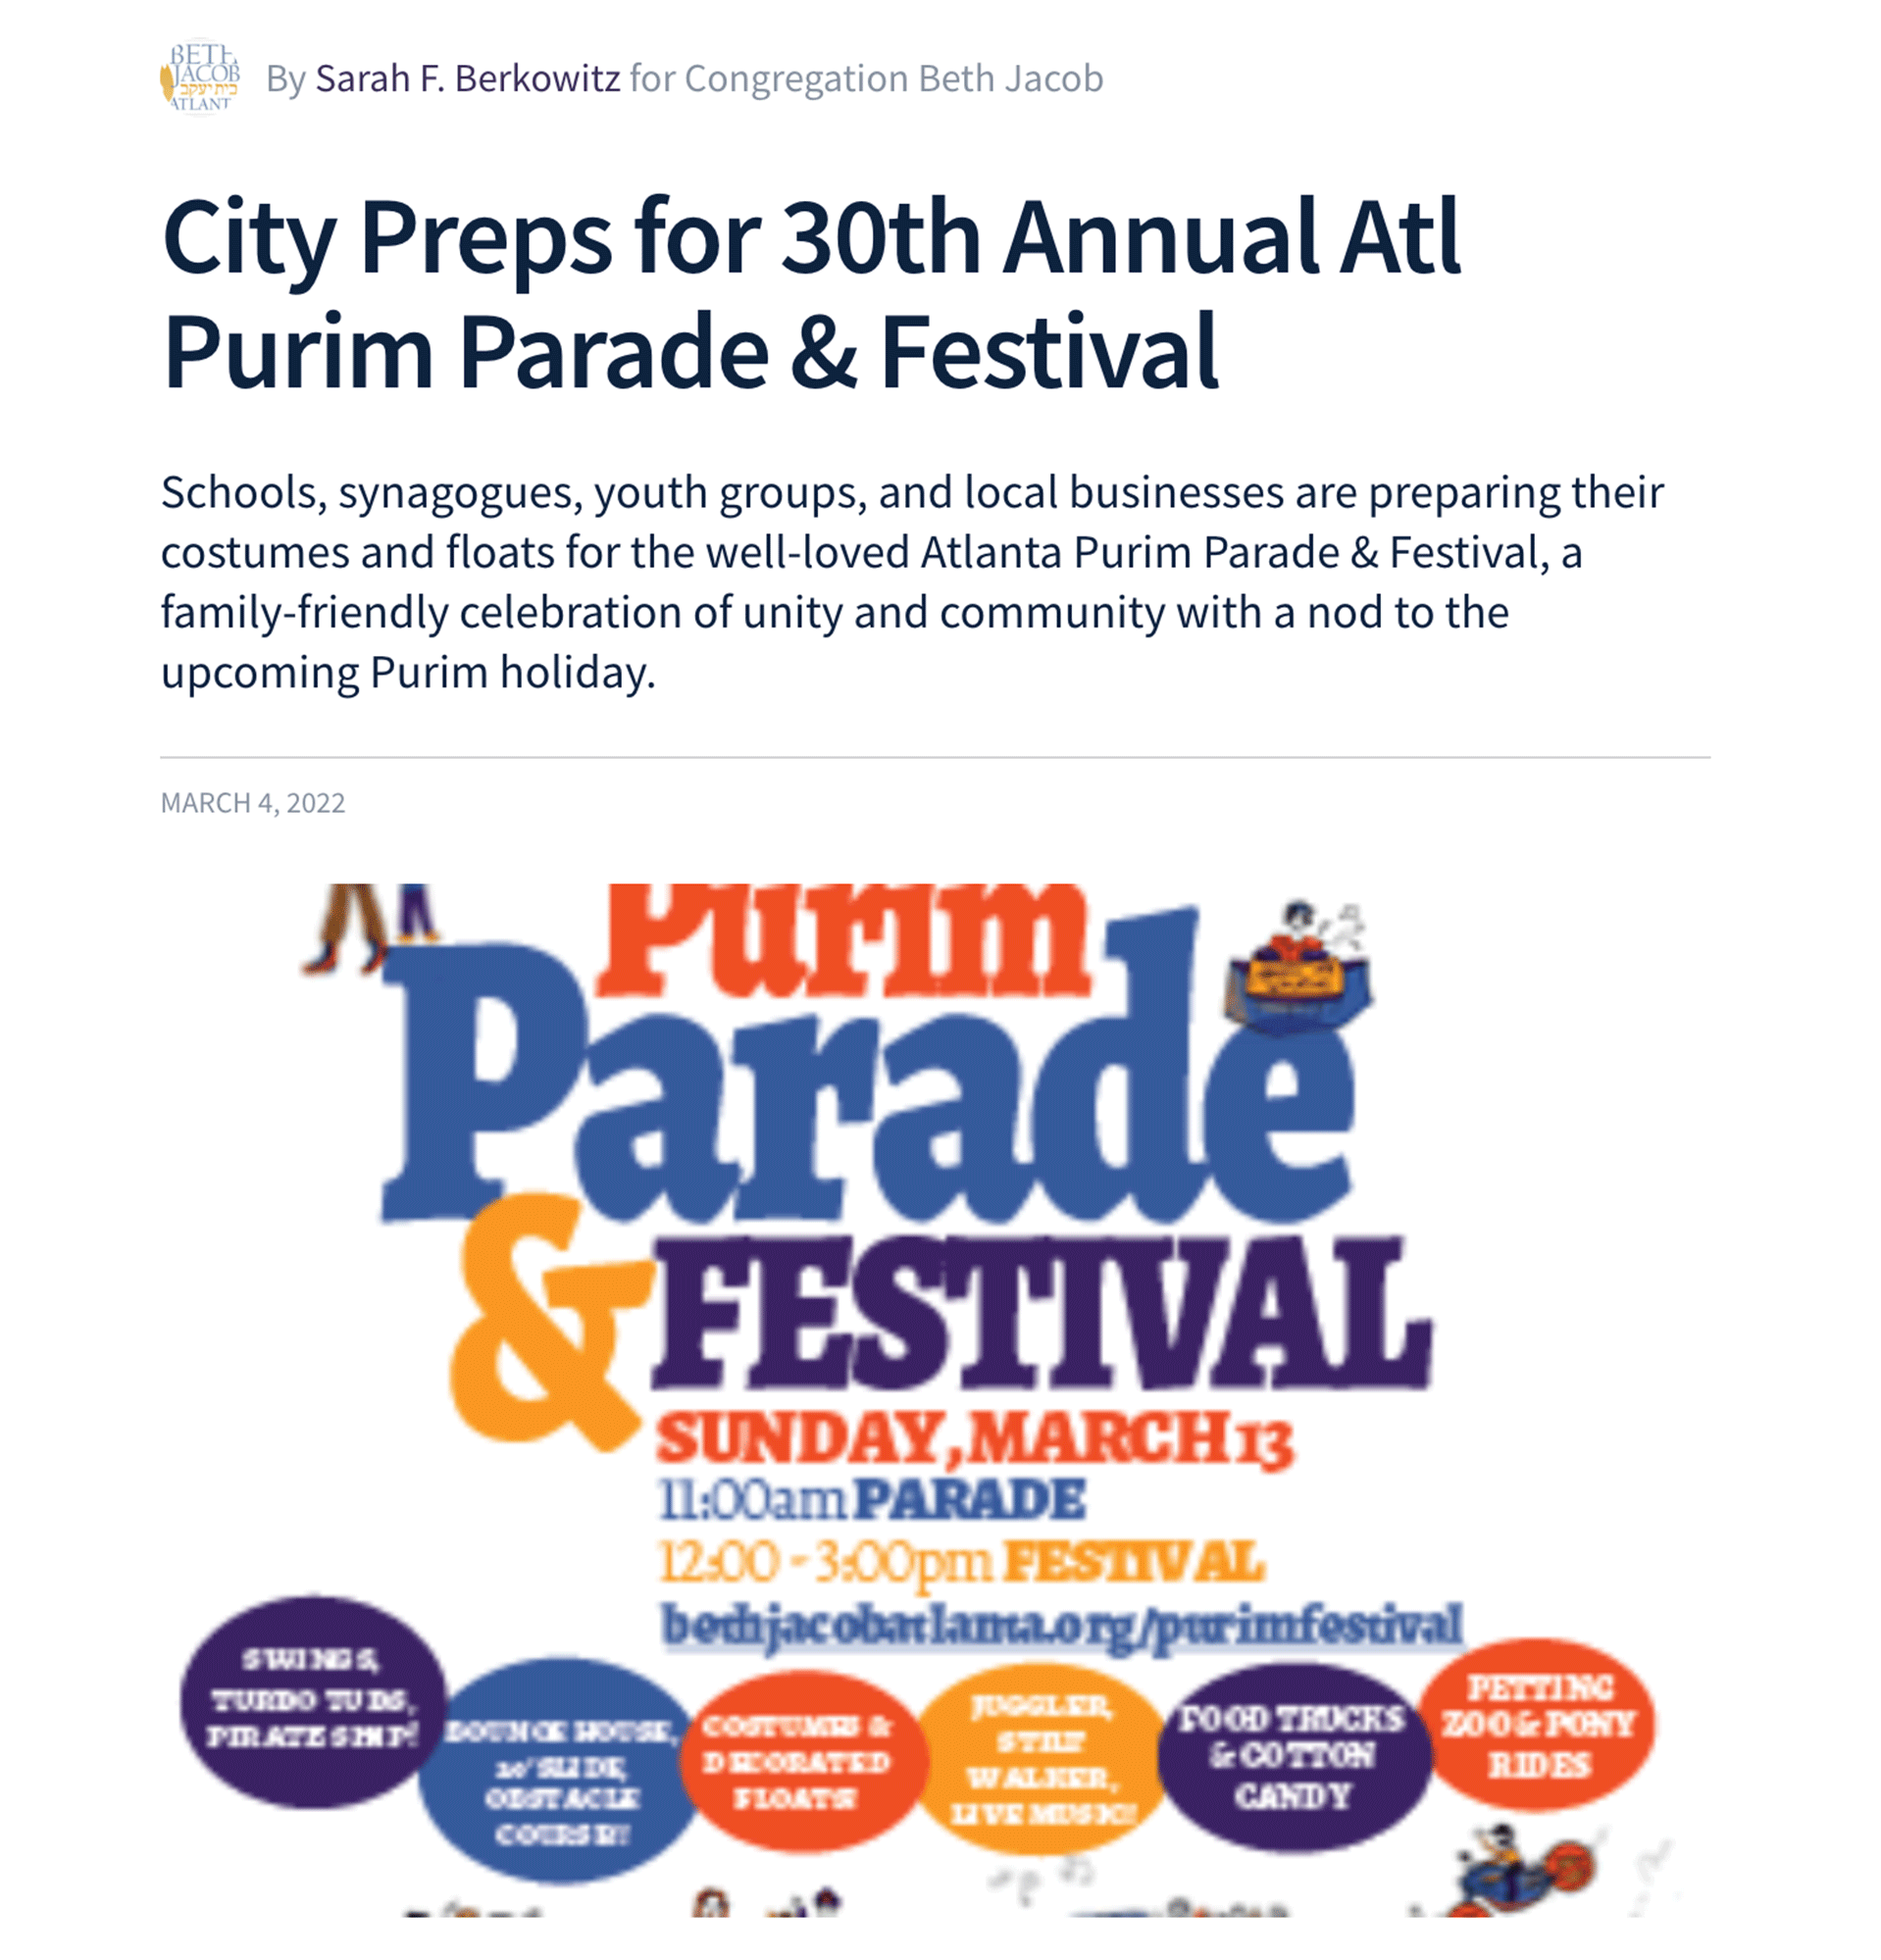 Purim parade blog